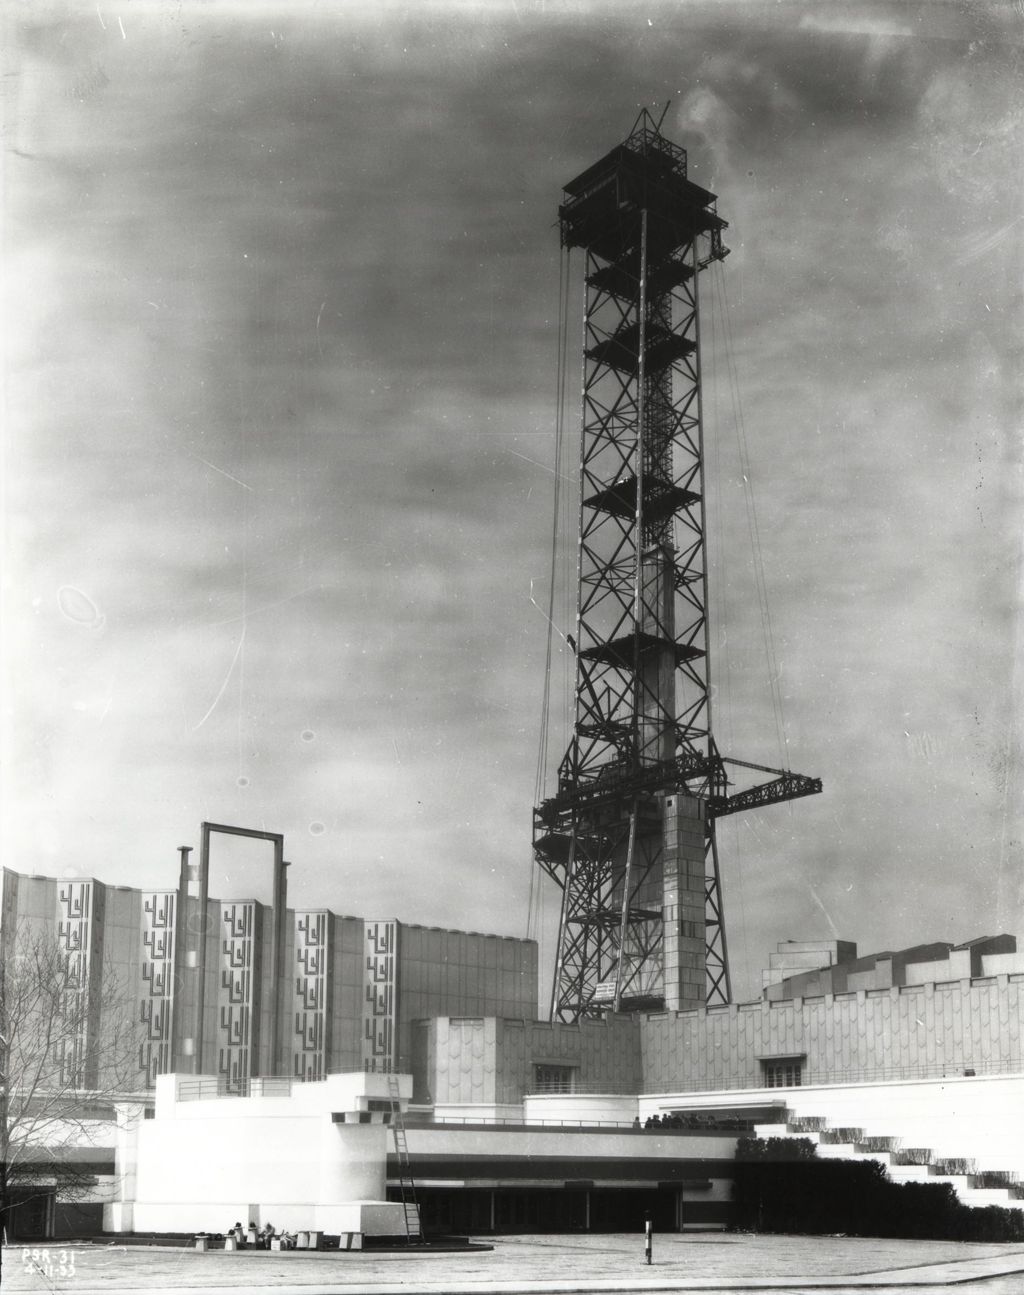 Century of Progress Sky Ride towers